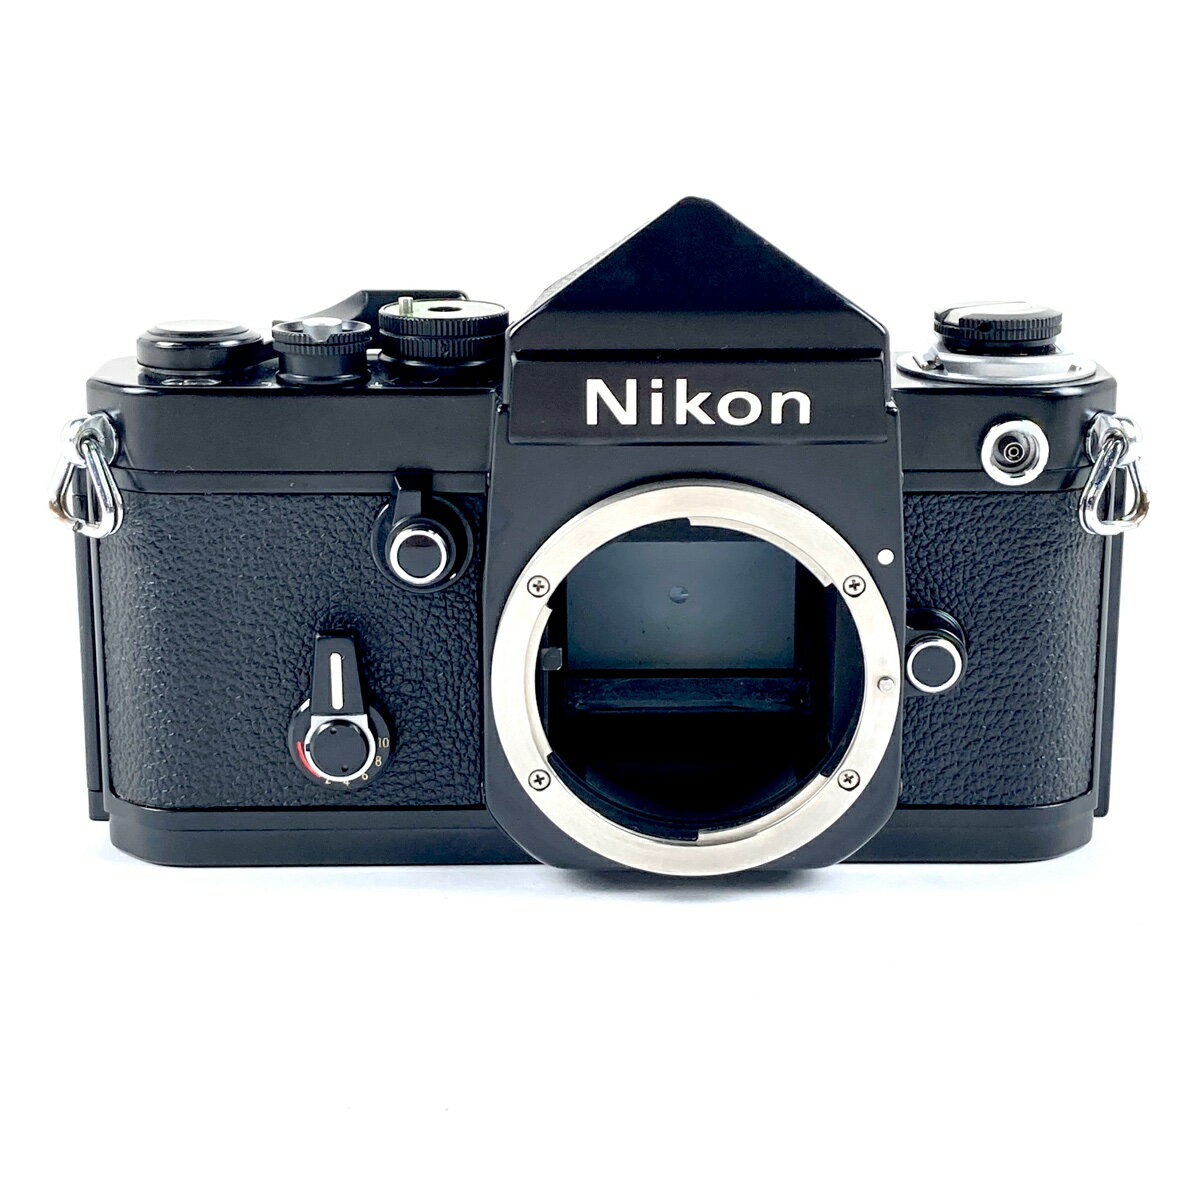 メーカー名 Nikon 製品名 F2 アイレベル ブラック ボディ カメラ種類 フィルム マニュアルフォーカス 一眼レフカメラ ブランド状態ランク ランクC コメント 【外観】 スレやキズ、汚れ、フィルム室内やミラー部にモルト劣化があります。 【光学系】 ファインダーにカビやクモリ、ホコリの混入があります。 ※バルサム切れやコーティング剥がれ等、クモリの原因は特定できかねます。 【動作】 シャッター、ダイヤル、巻き上げレバー、巻き戻しクランク、フィルムカウンター、セルフタイマーなど動作確認済です。